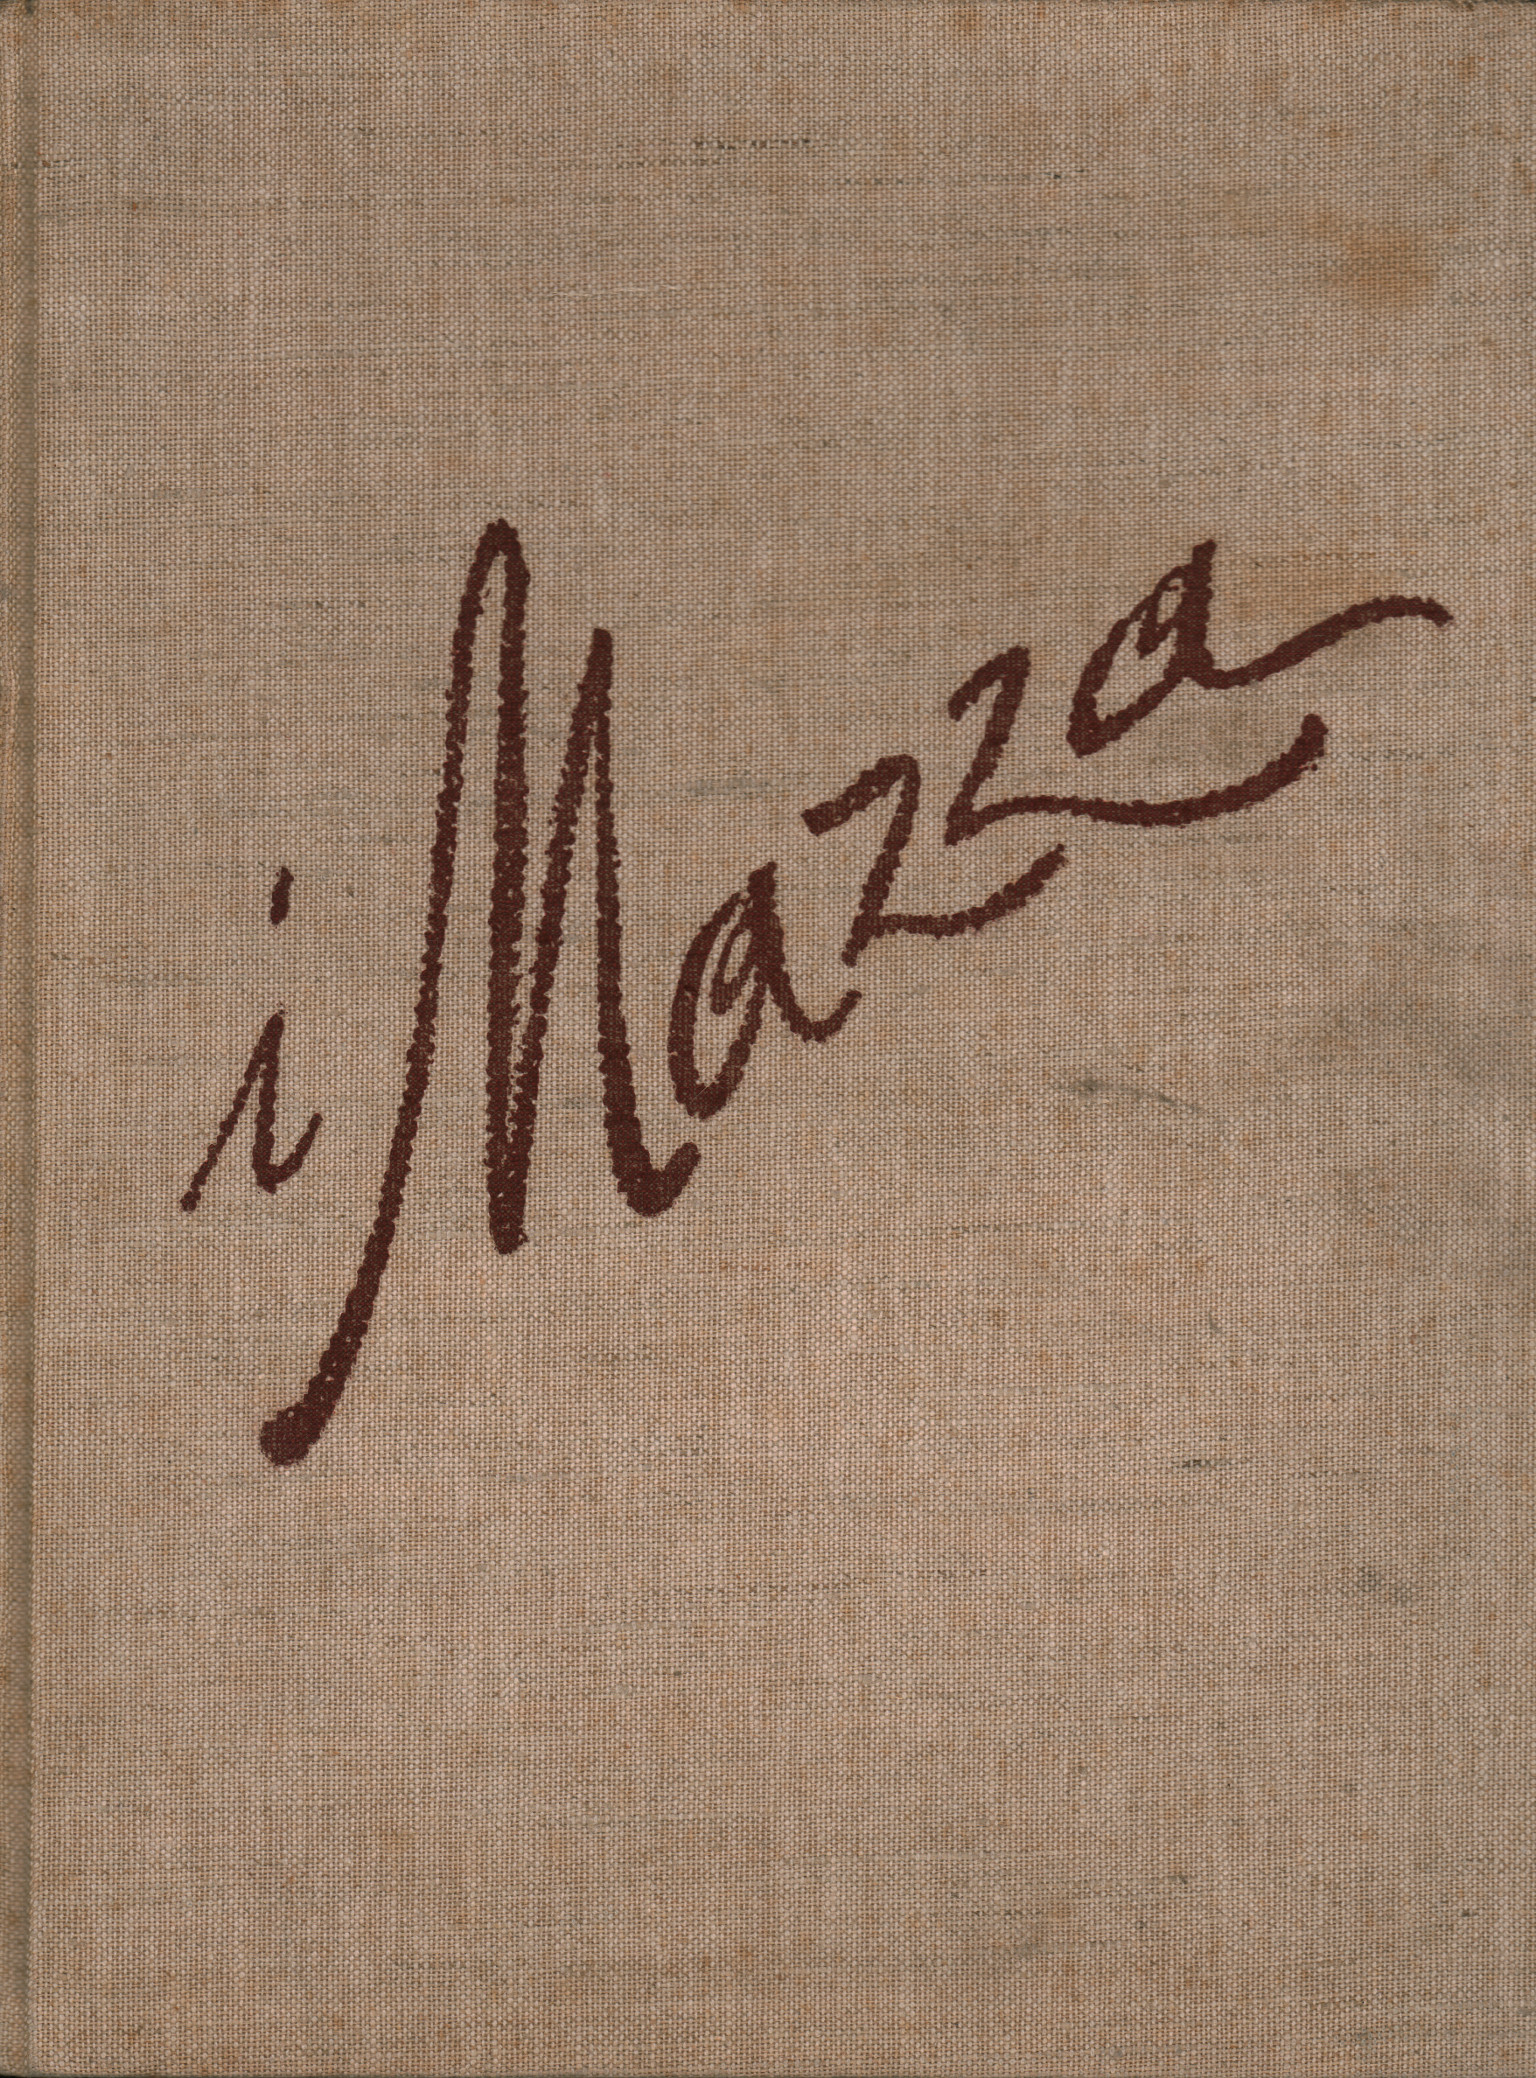 The Mazza, Aldo Mazza